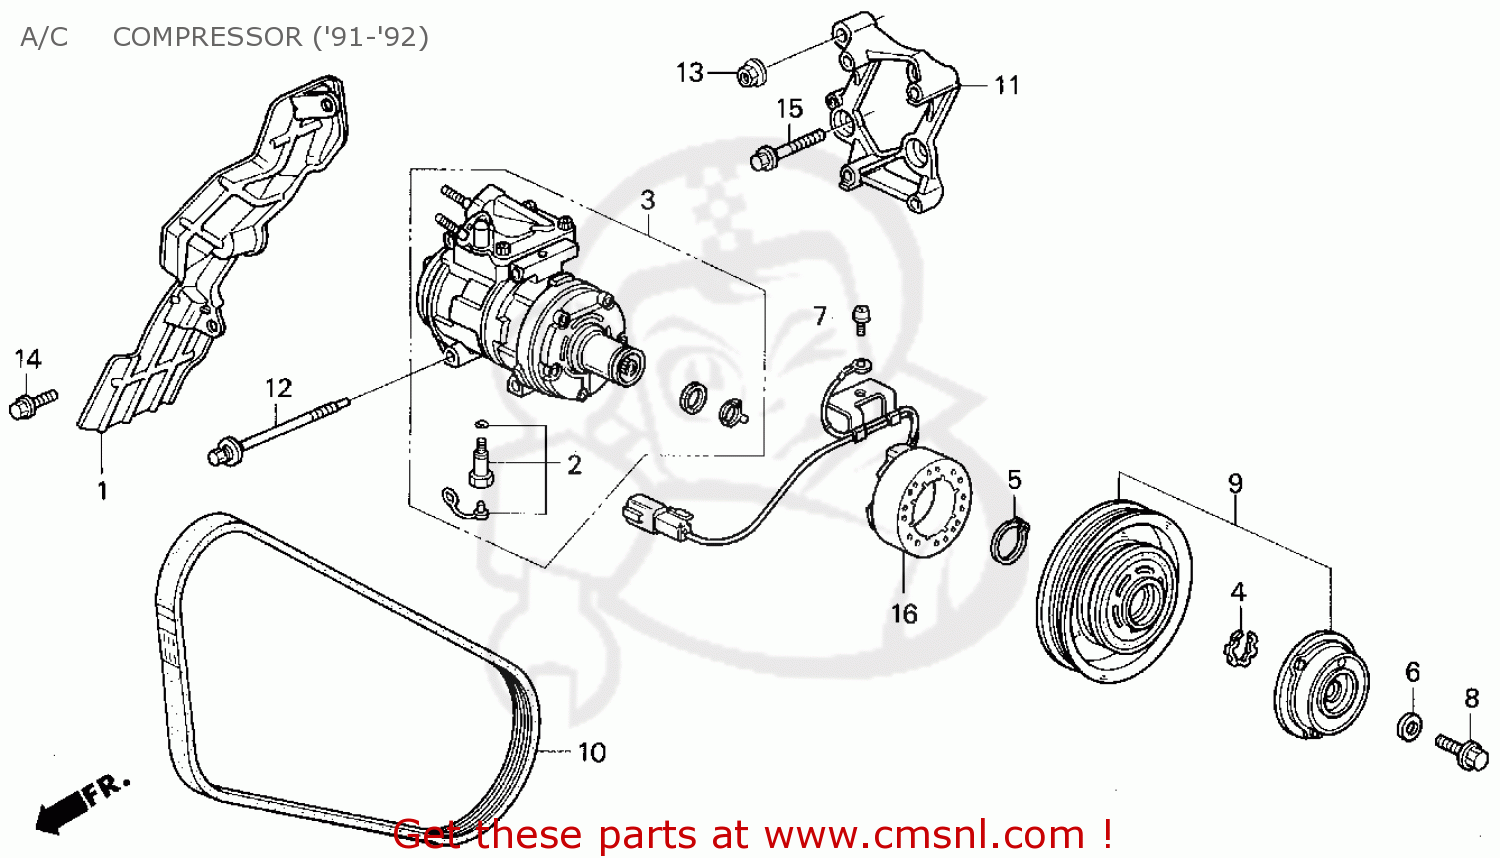 Honda accord parts microfiche #4